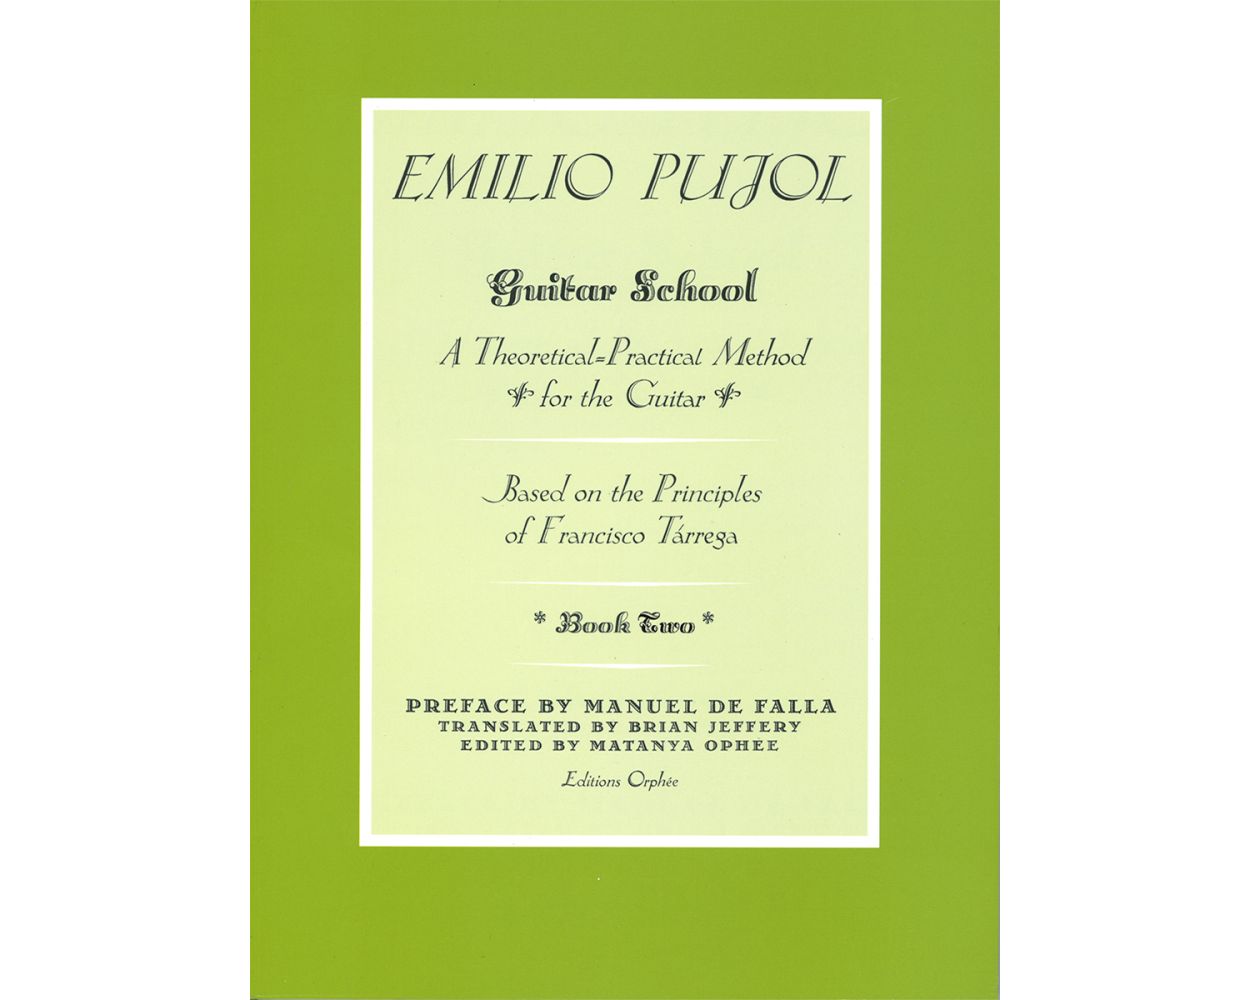 Emilio pujol book 1 - falasdial